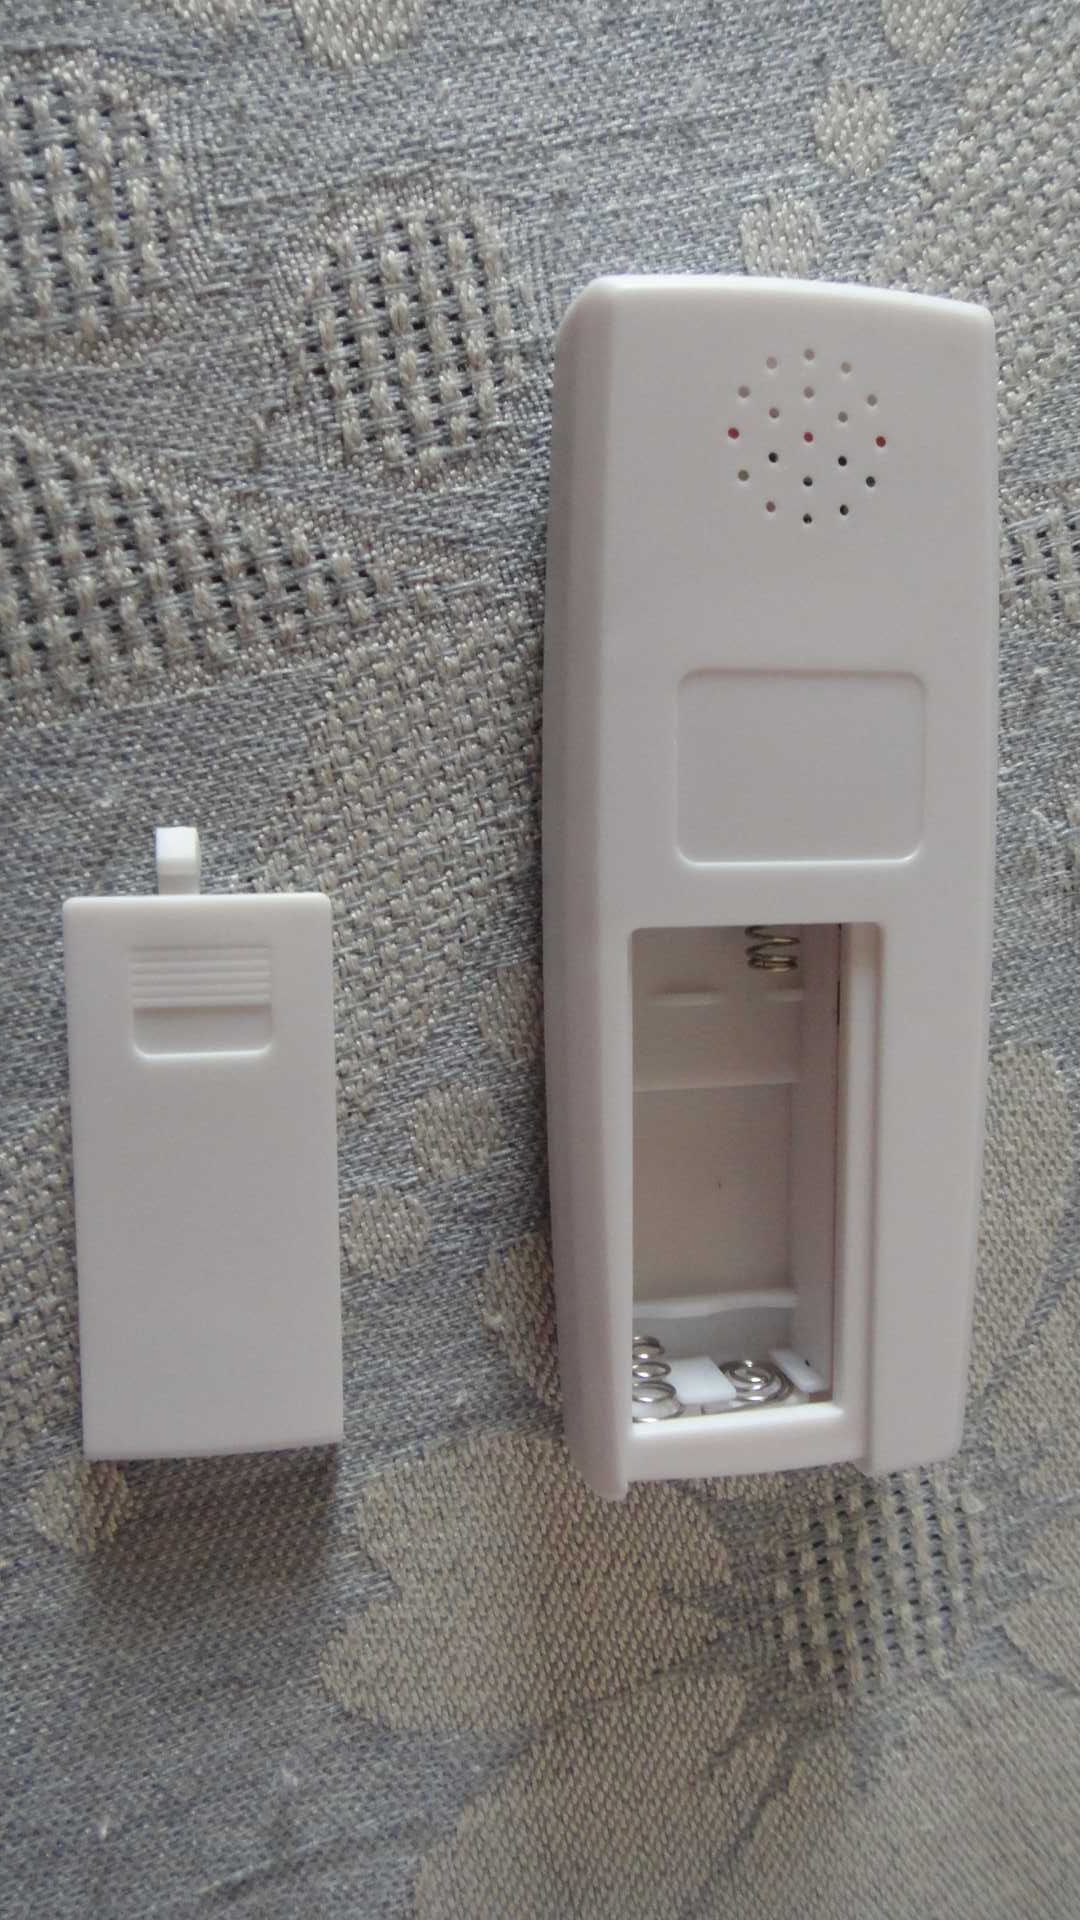 CR66 ручной программатор RFID-Дубликатор ID-карт, брелоков домофона